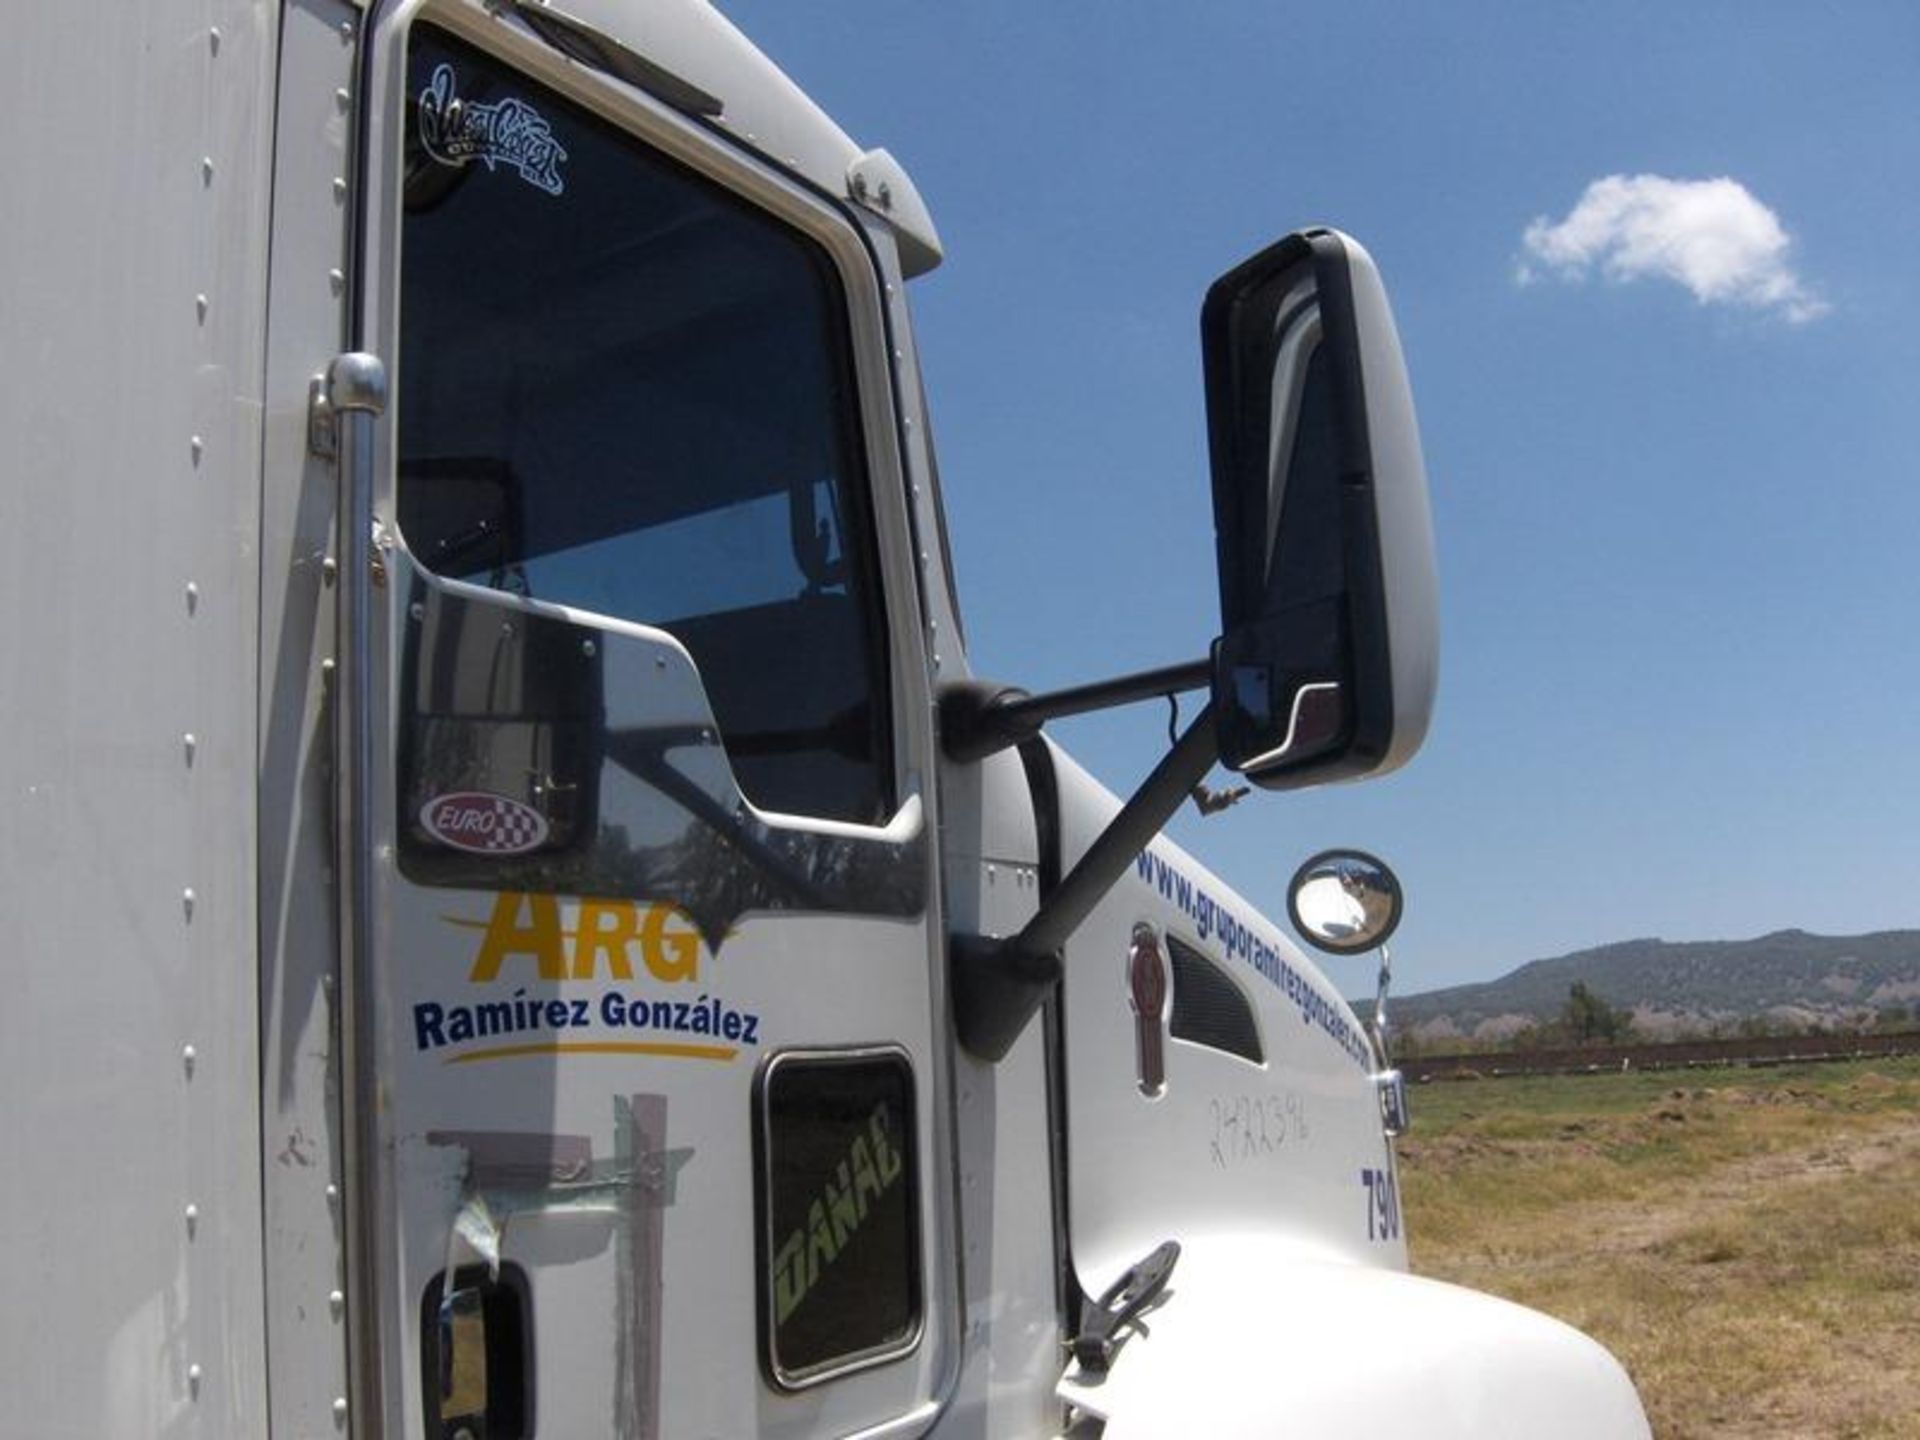 Vehículo Marca Kenworthtipo: Tracto Camion Modelo 2014 Numero Economico 790, Located In: Jalisco, - Image 17 of 19